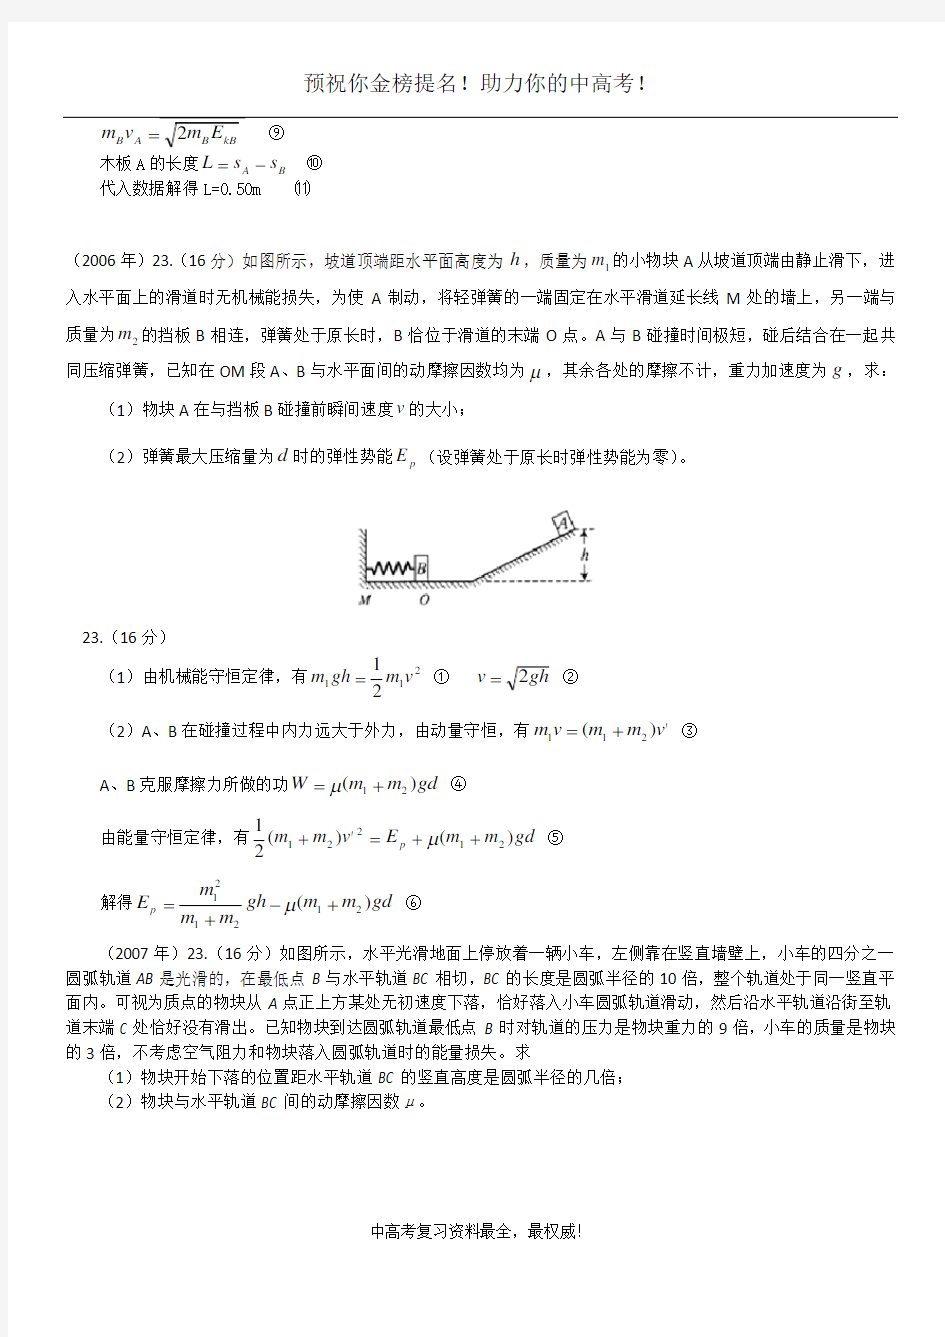 2004年至2013年天津高考物理试题分类——力学综合计算题 (1)